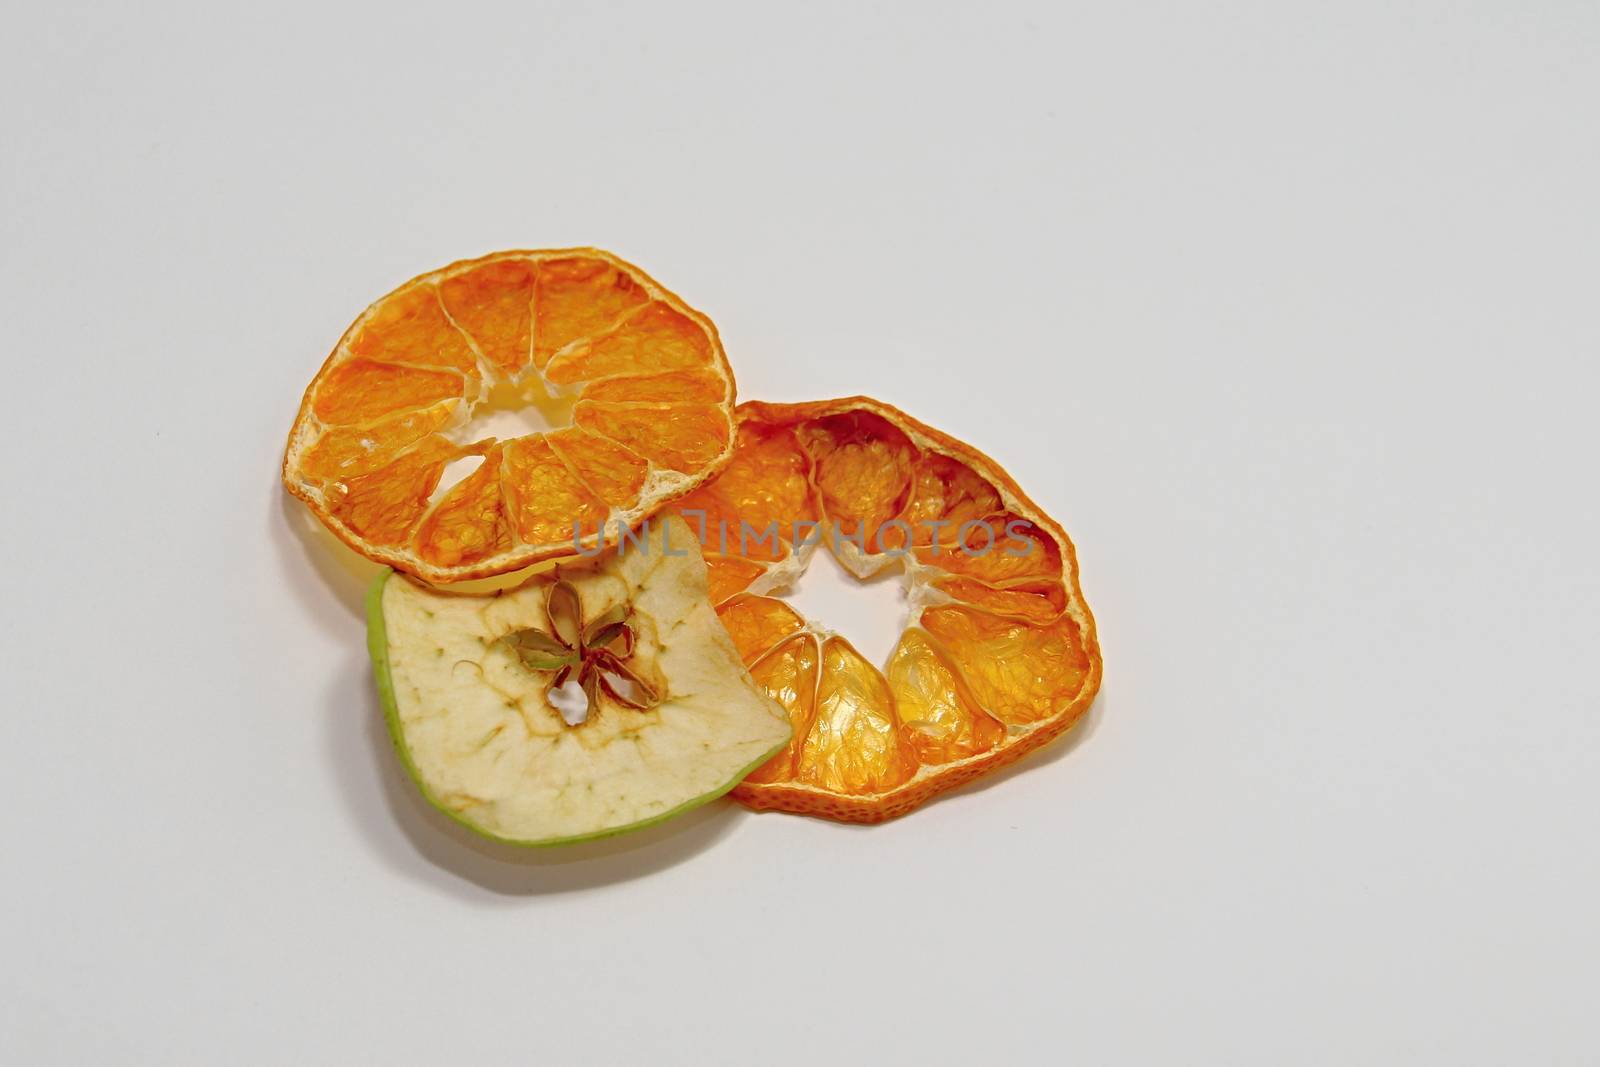 Dried fruit by Dermot68